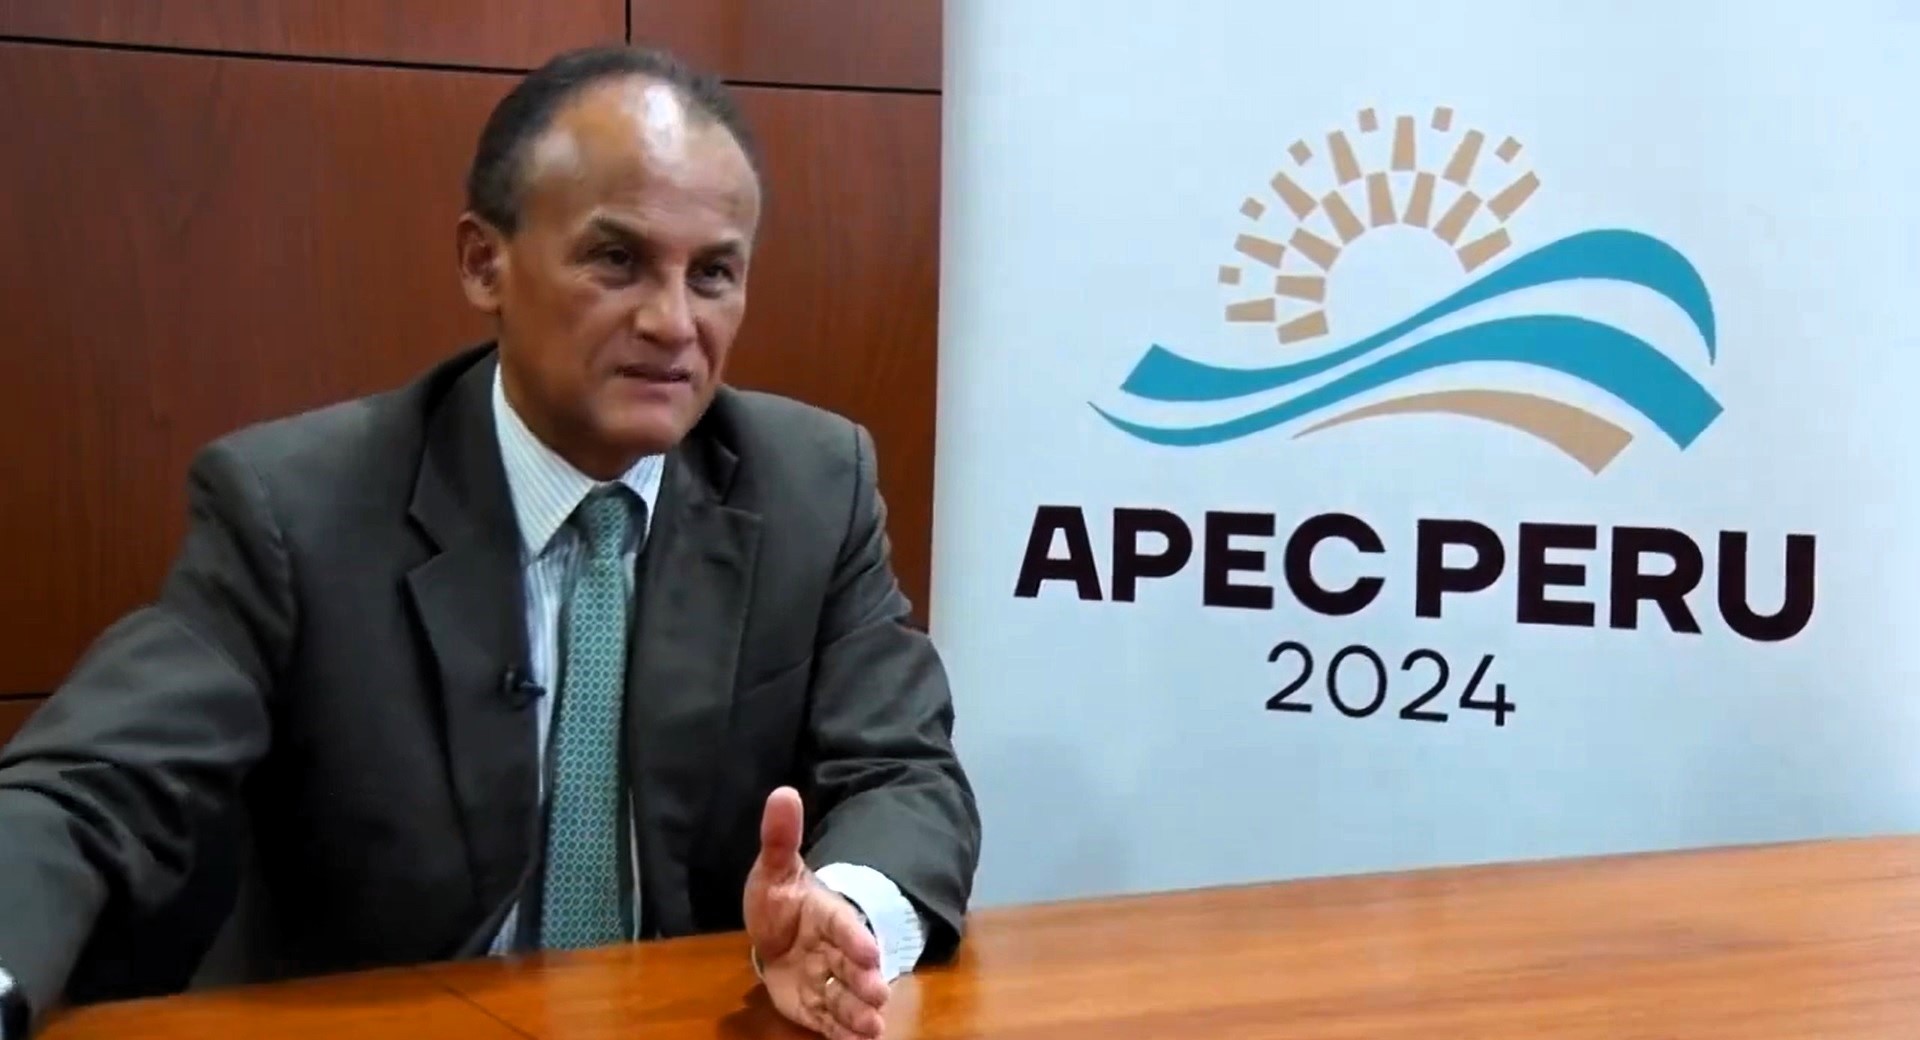 APEC Ciudadano Perú 2024 busca generar espacios de acercamiento con sociedad civil para incorporarlo en la agenda de este foro mundial.